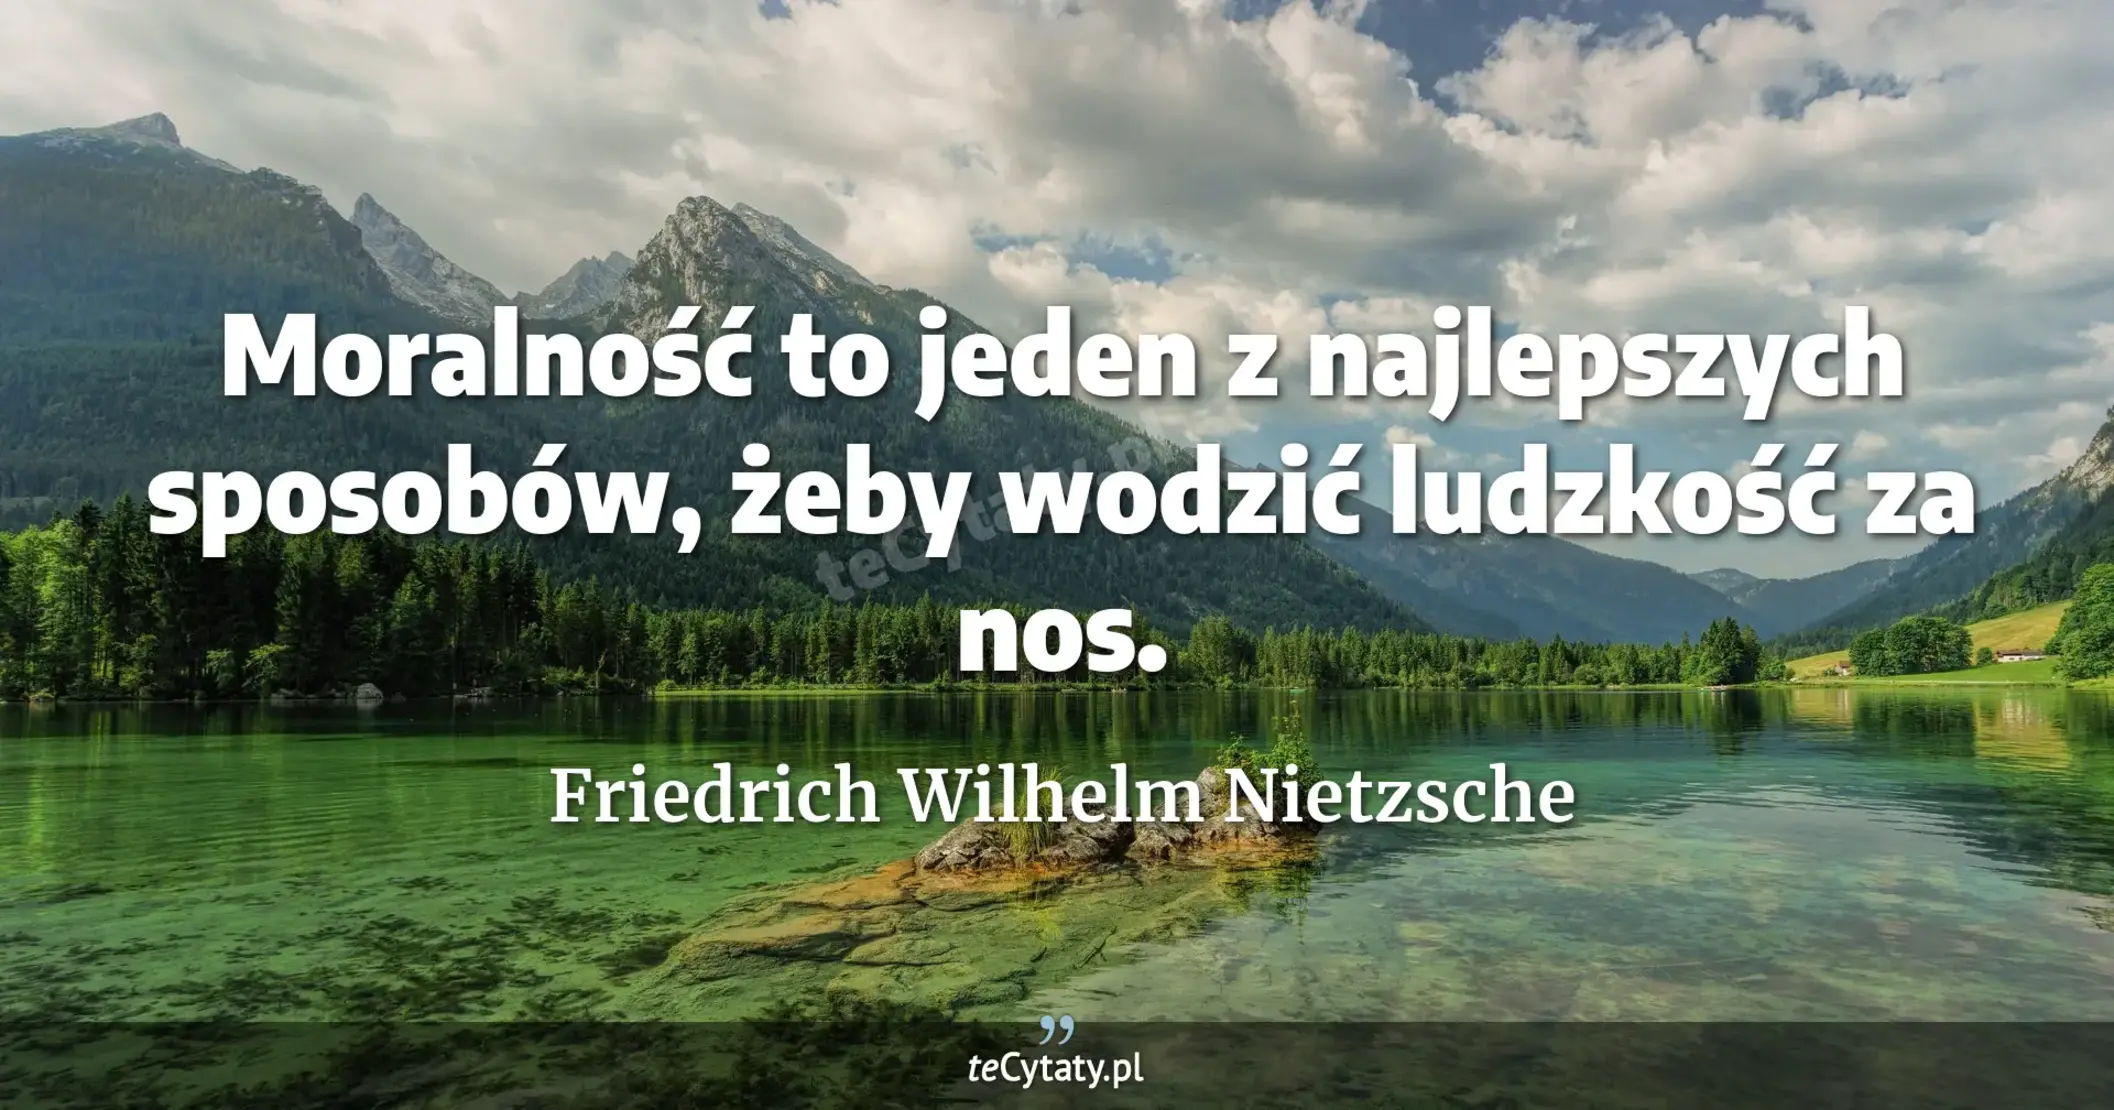 Moralność to jeden z najlepszych sposobów, żeby wodzić ludzkość za nos. - Friedrich Wilhelm Nietzsche